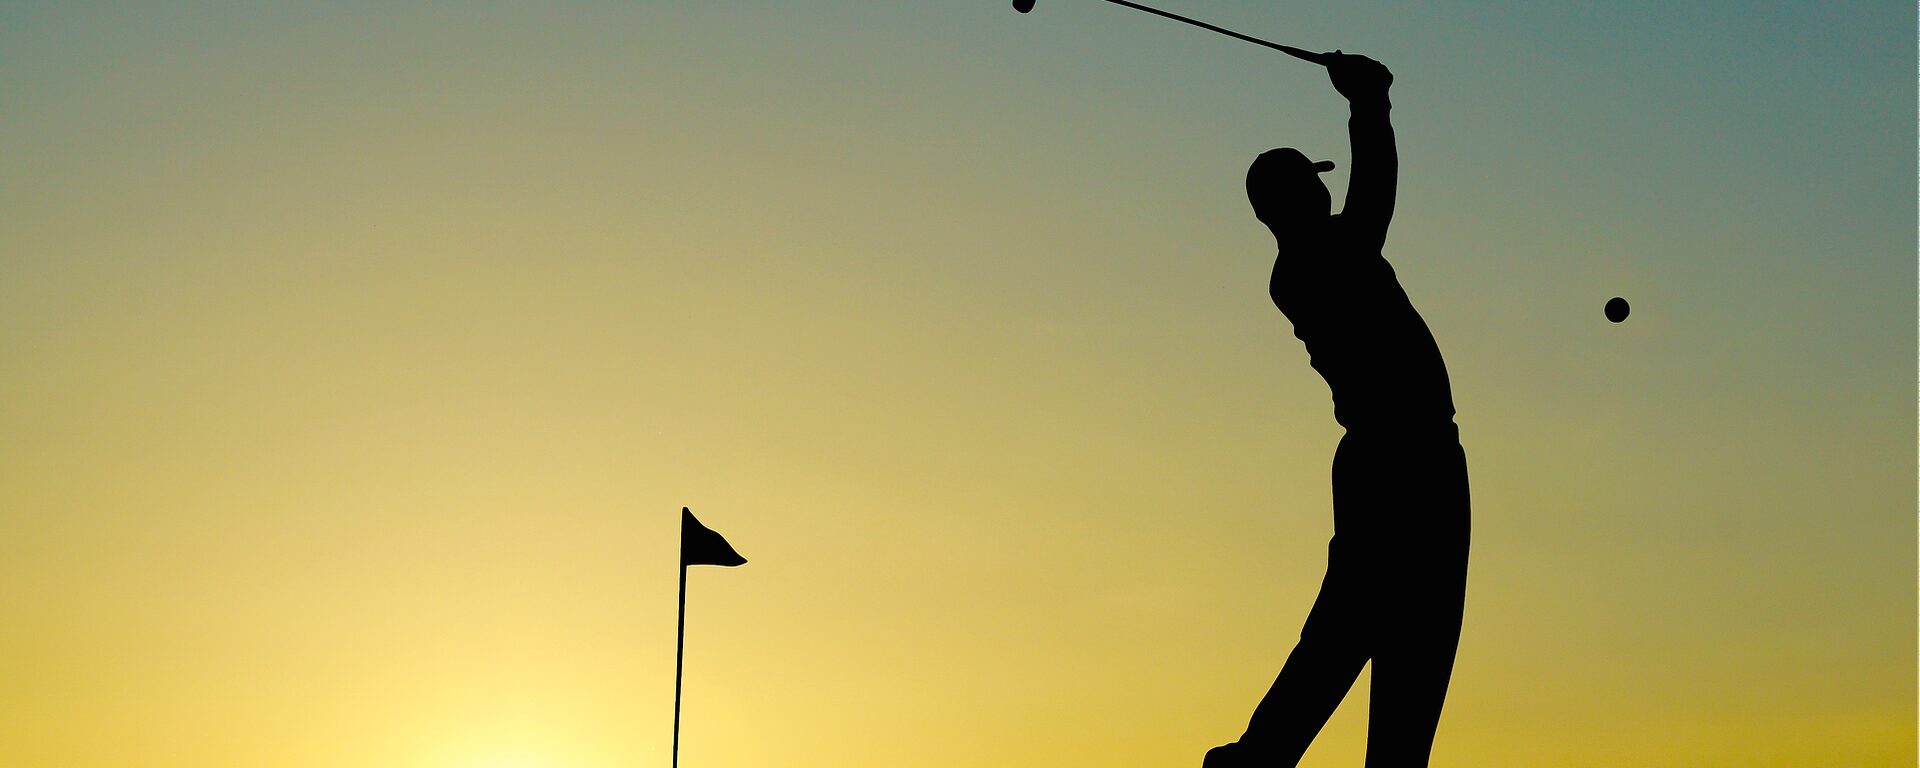 Golfer beim Schlag eines Golfballs, die Fahne im Rücken bei Sonnenuntergang.